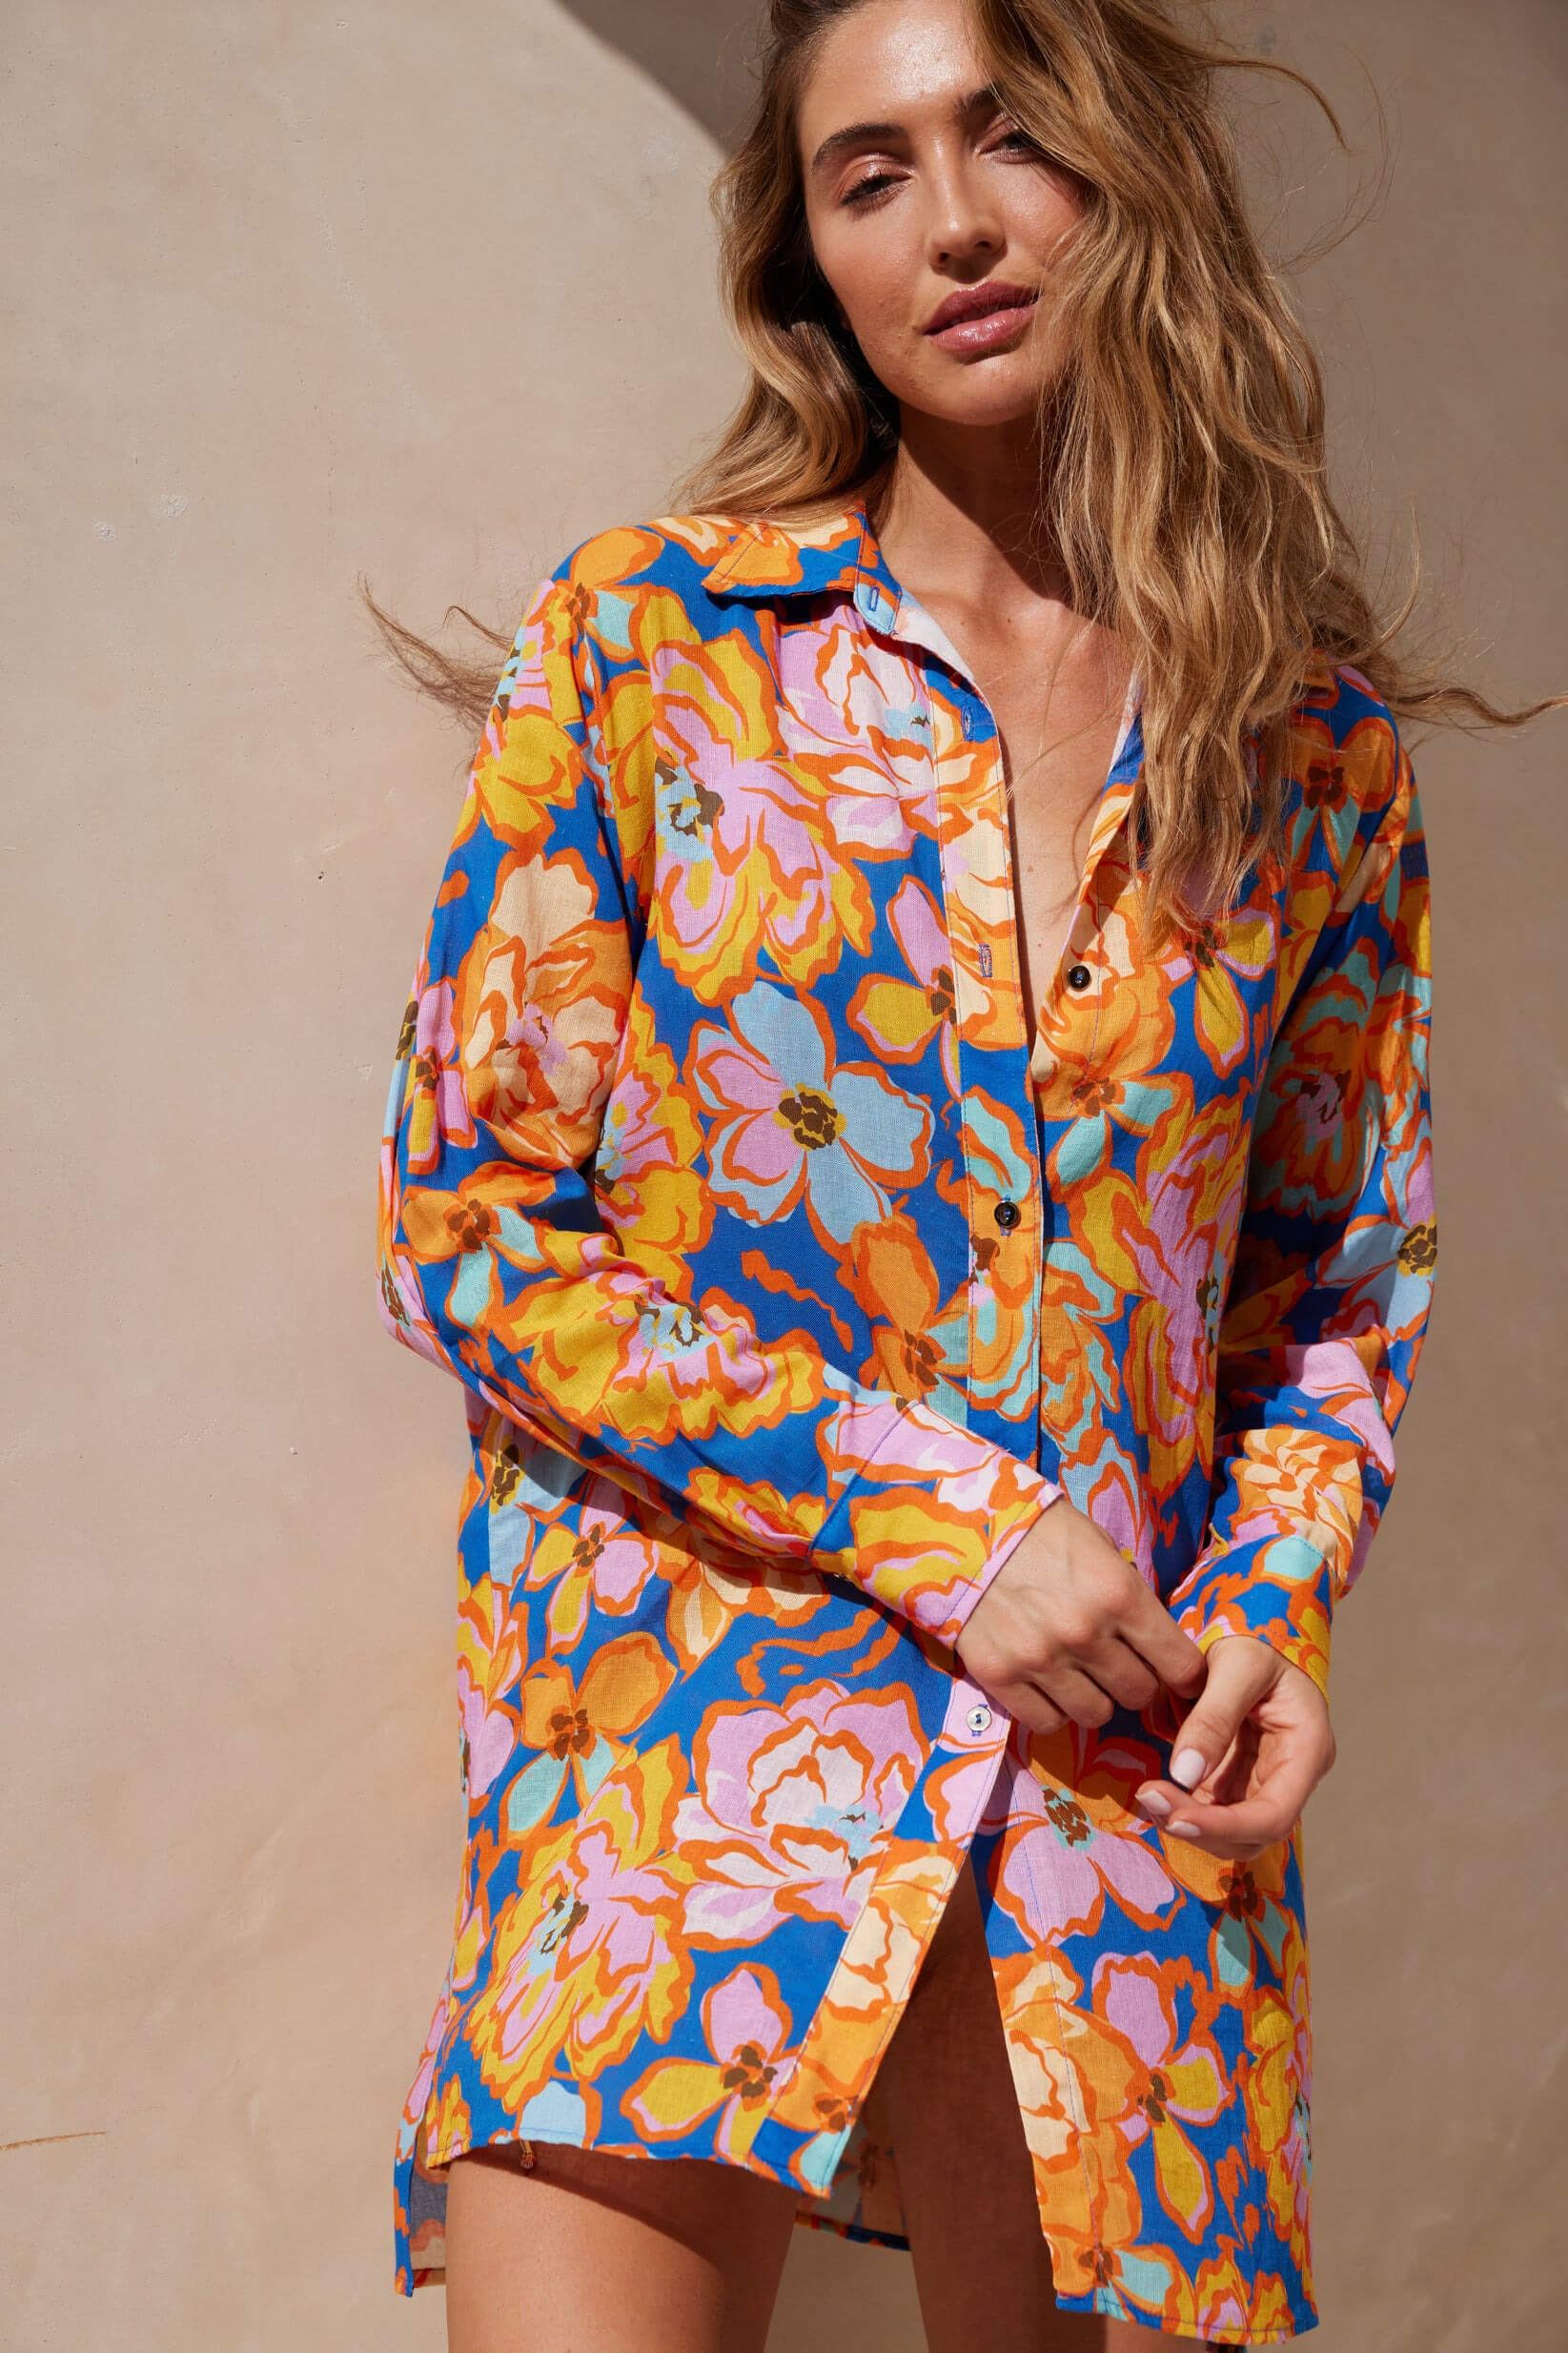 Aquari solara shirt dress in Santorini floral